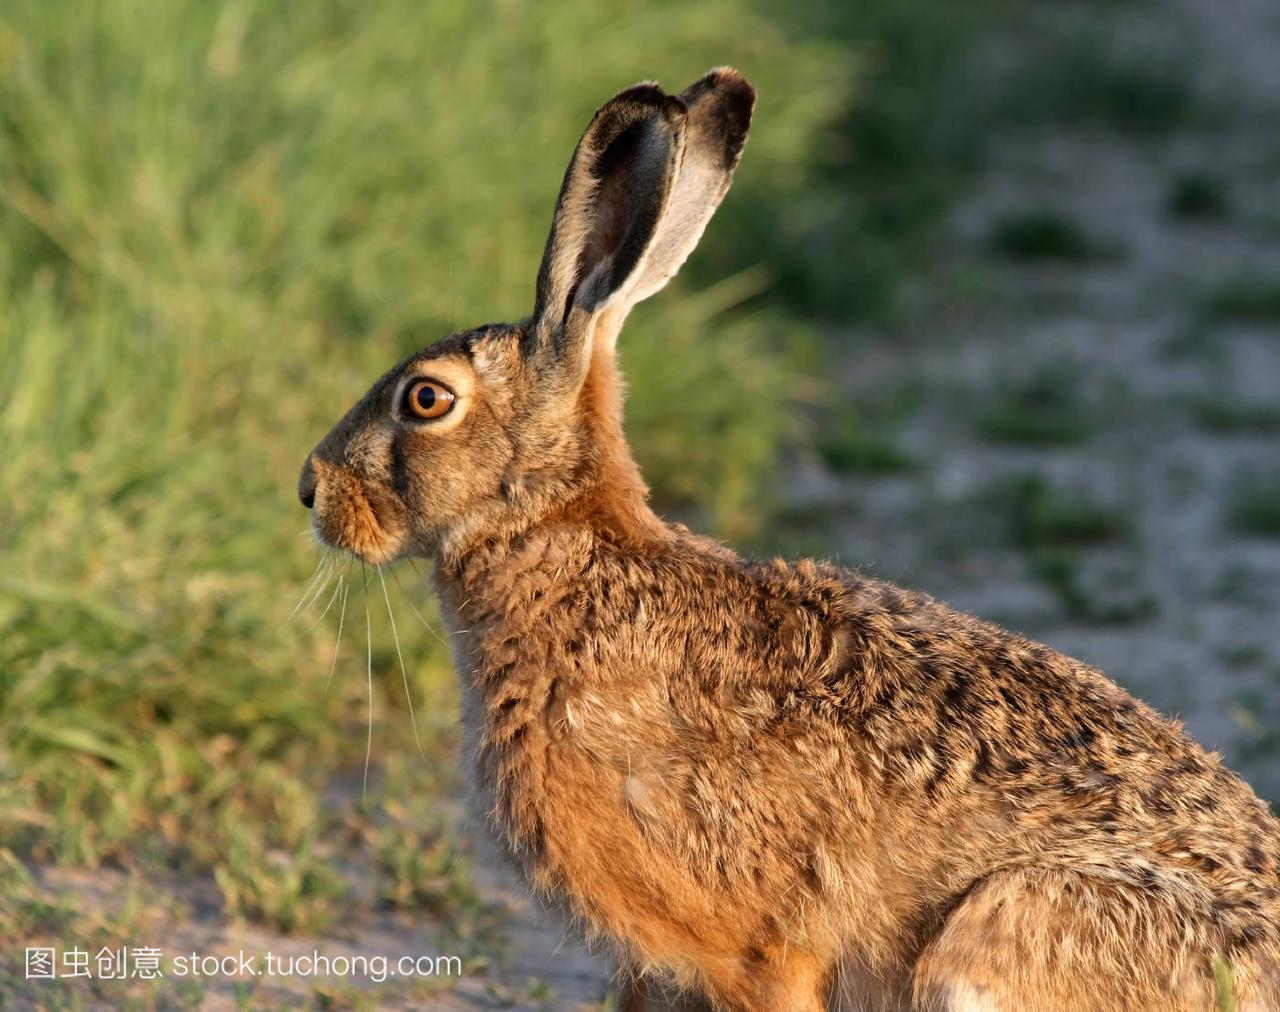 野兔,hare,Bunny,ears,害羞,shy,英亩,acre,